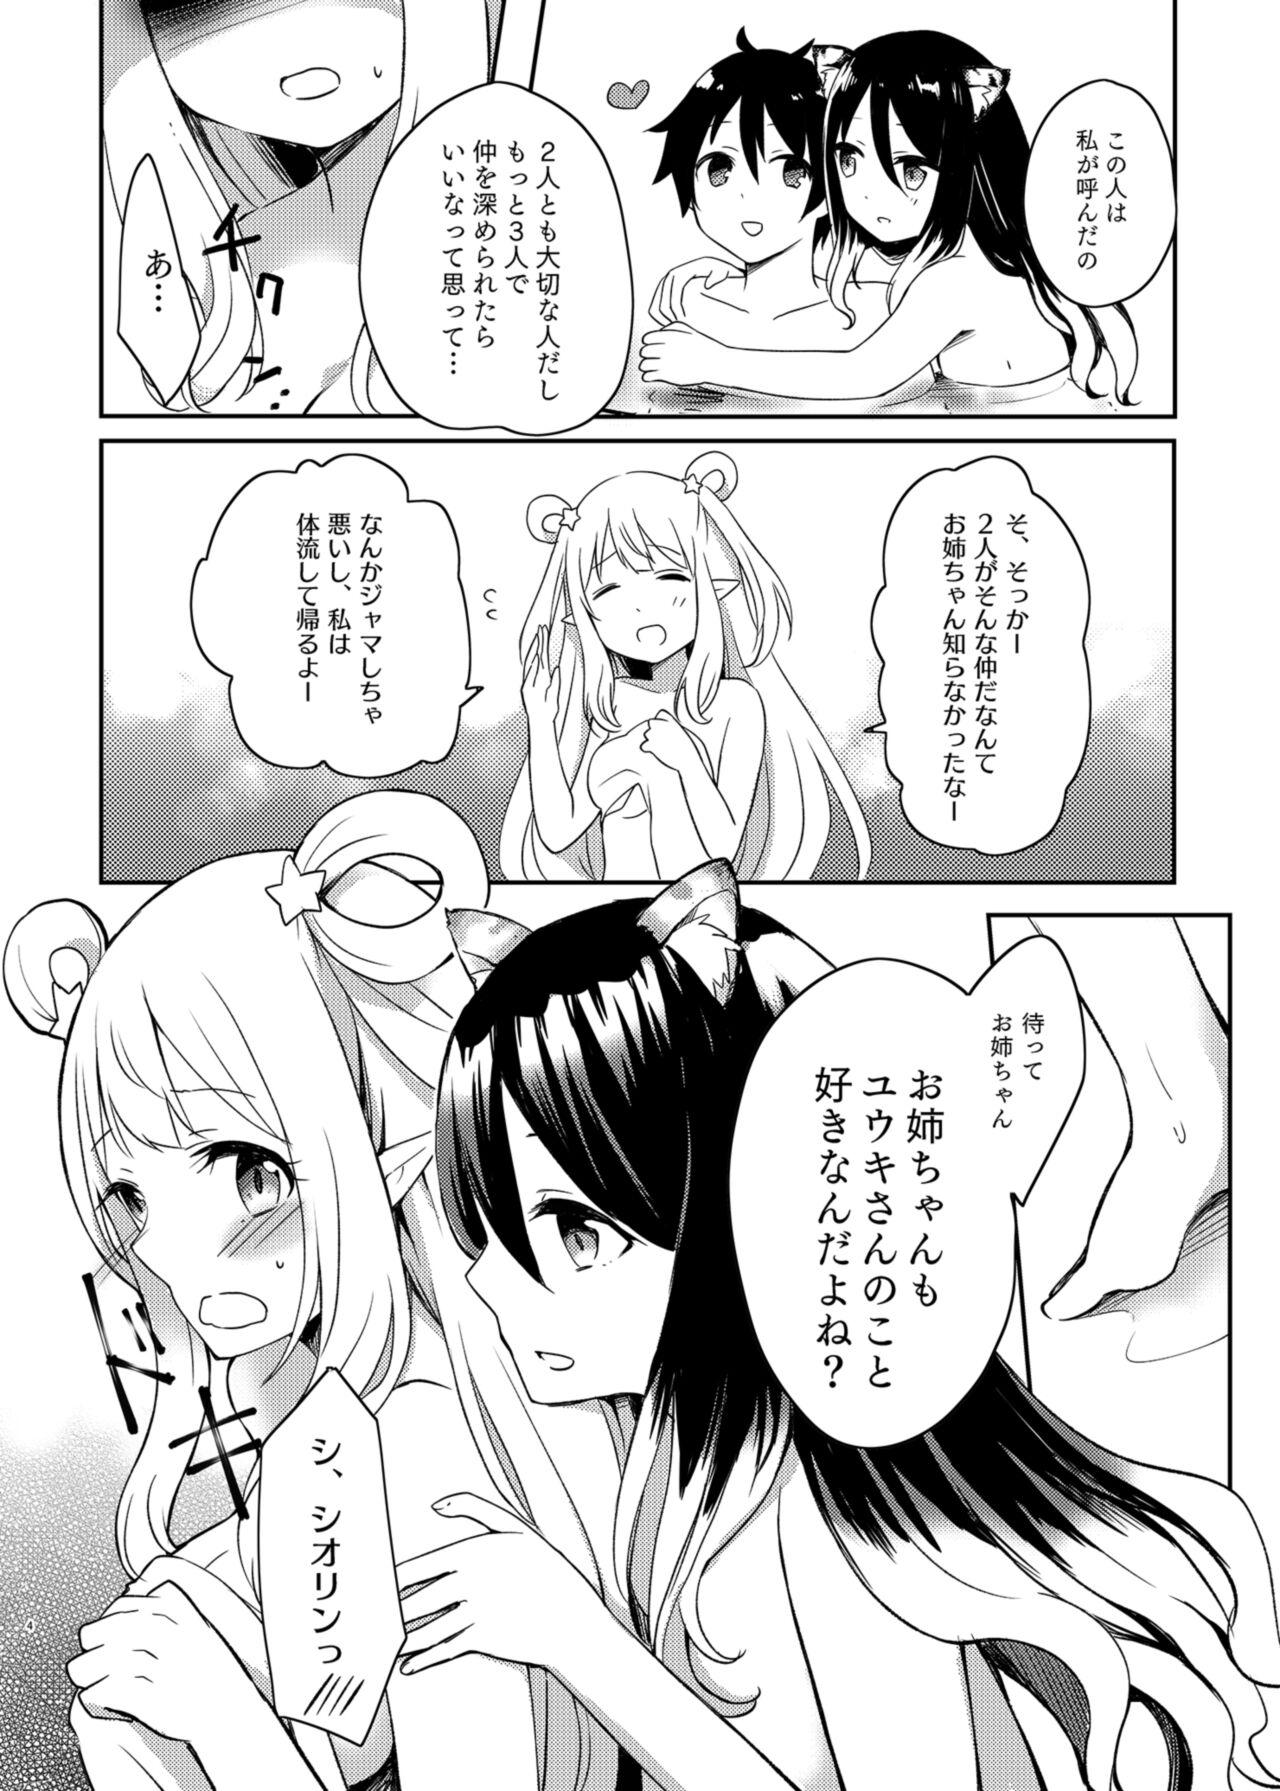 Reverse Cowgirl Hatsune to Shiori no Yukemuri Daisakusen - Princess connect Students - Page 4